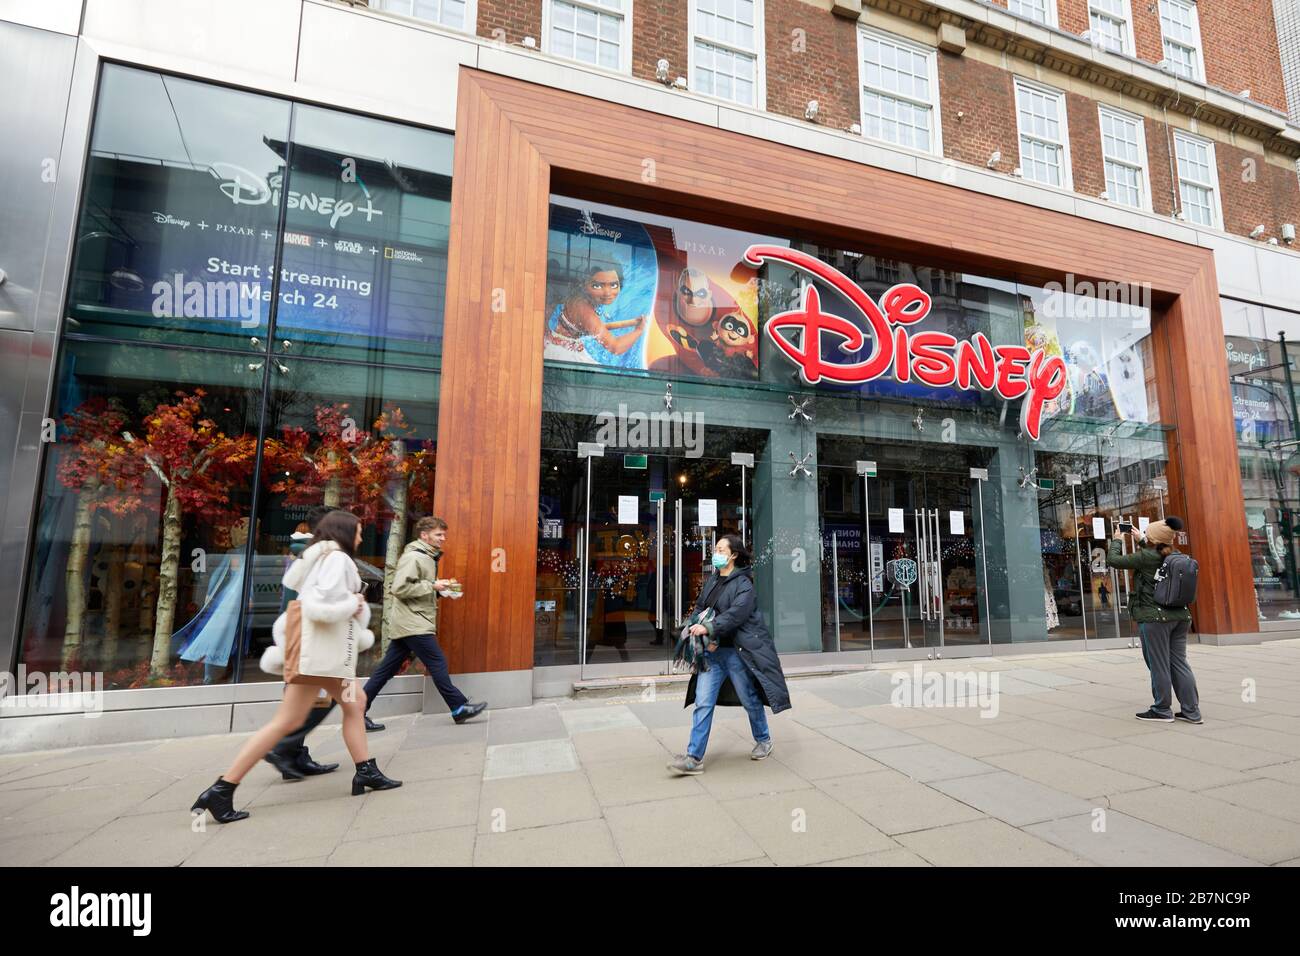 Londres, Royaume-Uni - 17 mars 2020 : le magasin Disney sur Oxford Street. Le conglomérat américain du divertissement a fermé tous ses hôtels et magasins de détail en raison de l'épidémie mondiale COVID-19. Banque D'Images